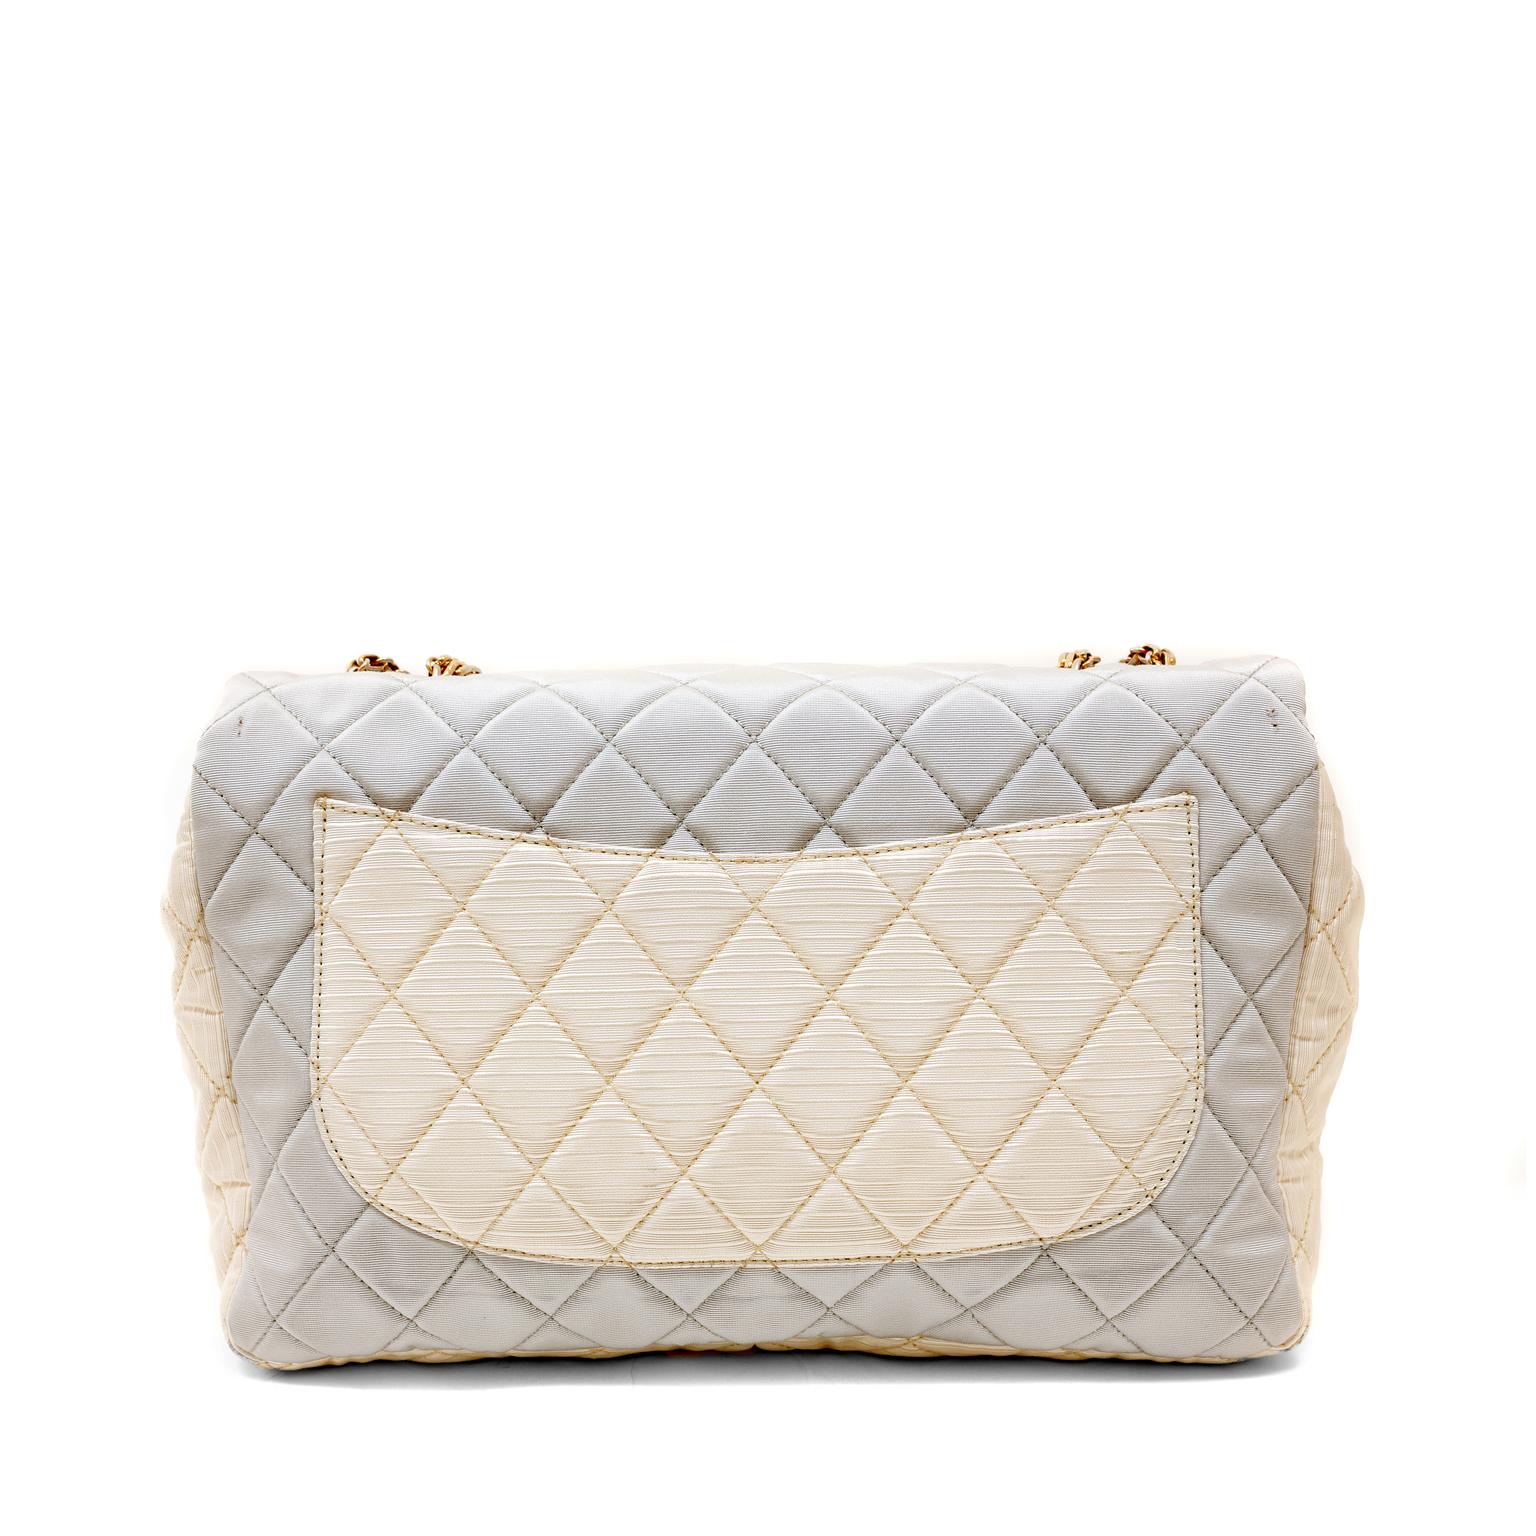 Diese authentische Chanel Tricolor Fabric Reissue Flap Bag ist in ausgezeichnetem Zustand.  Es ist eine wunderschöne Version der kultigen Neuauflage in femininen Pastellfarben.
Der Grosgrain-Stoff ist mit dem für Chanel typischen Rautenmuster in den